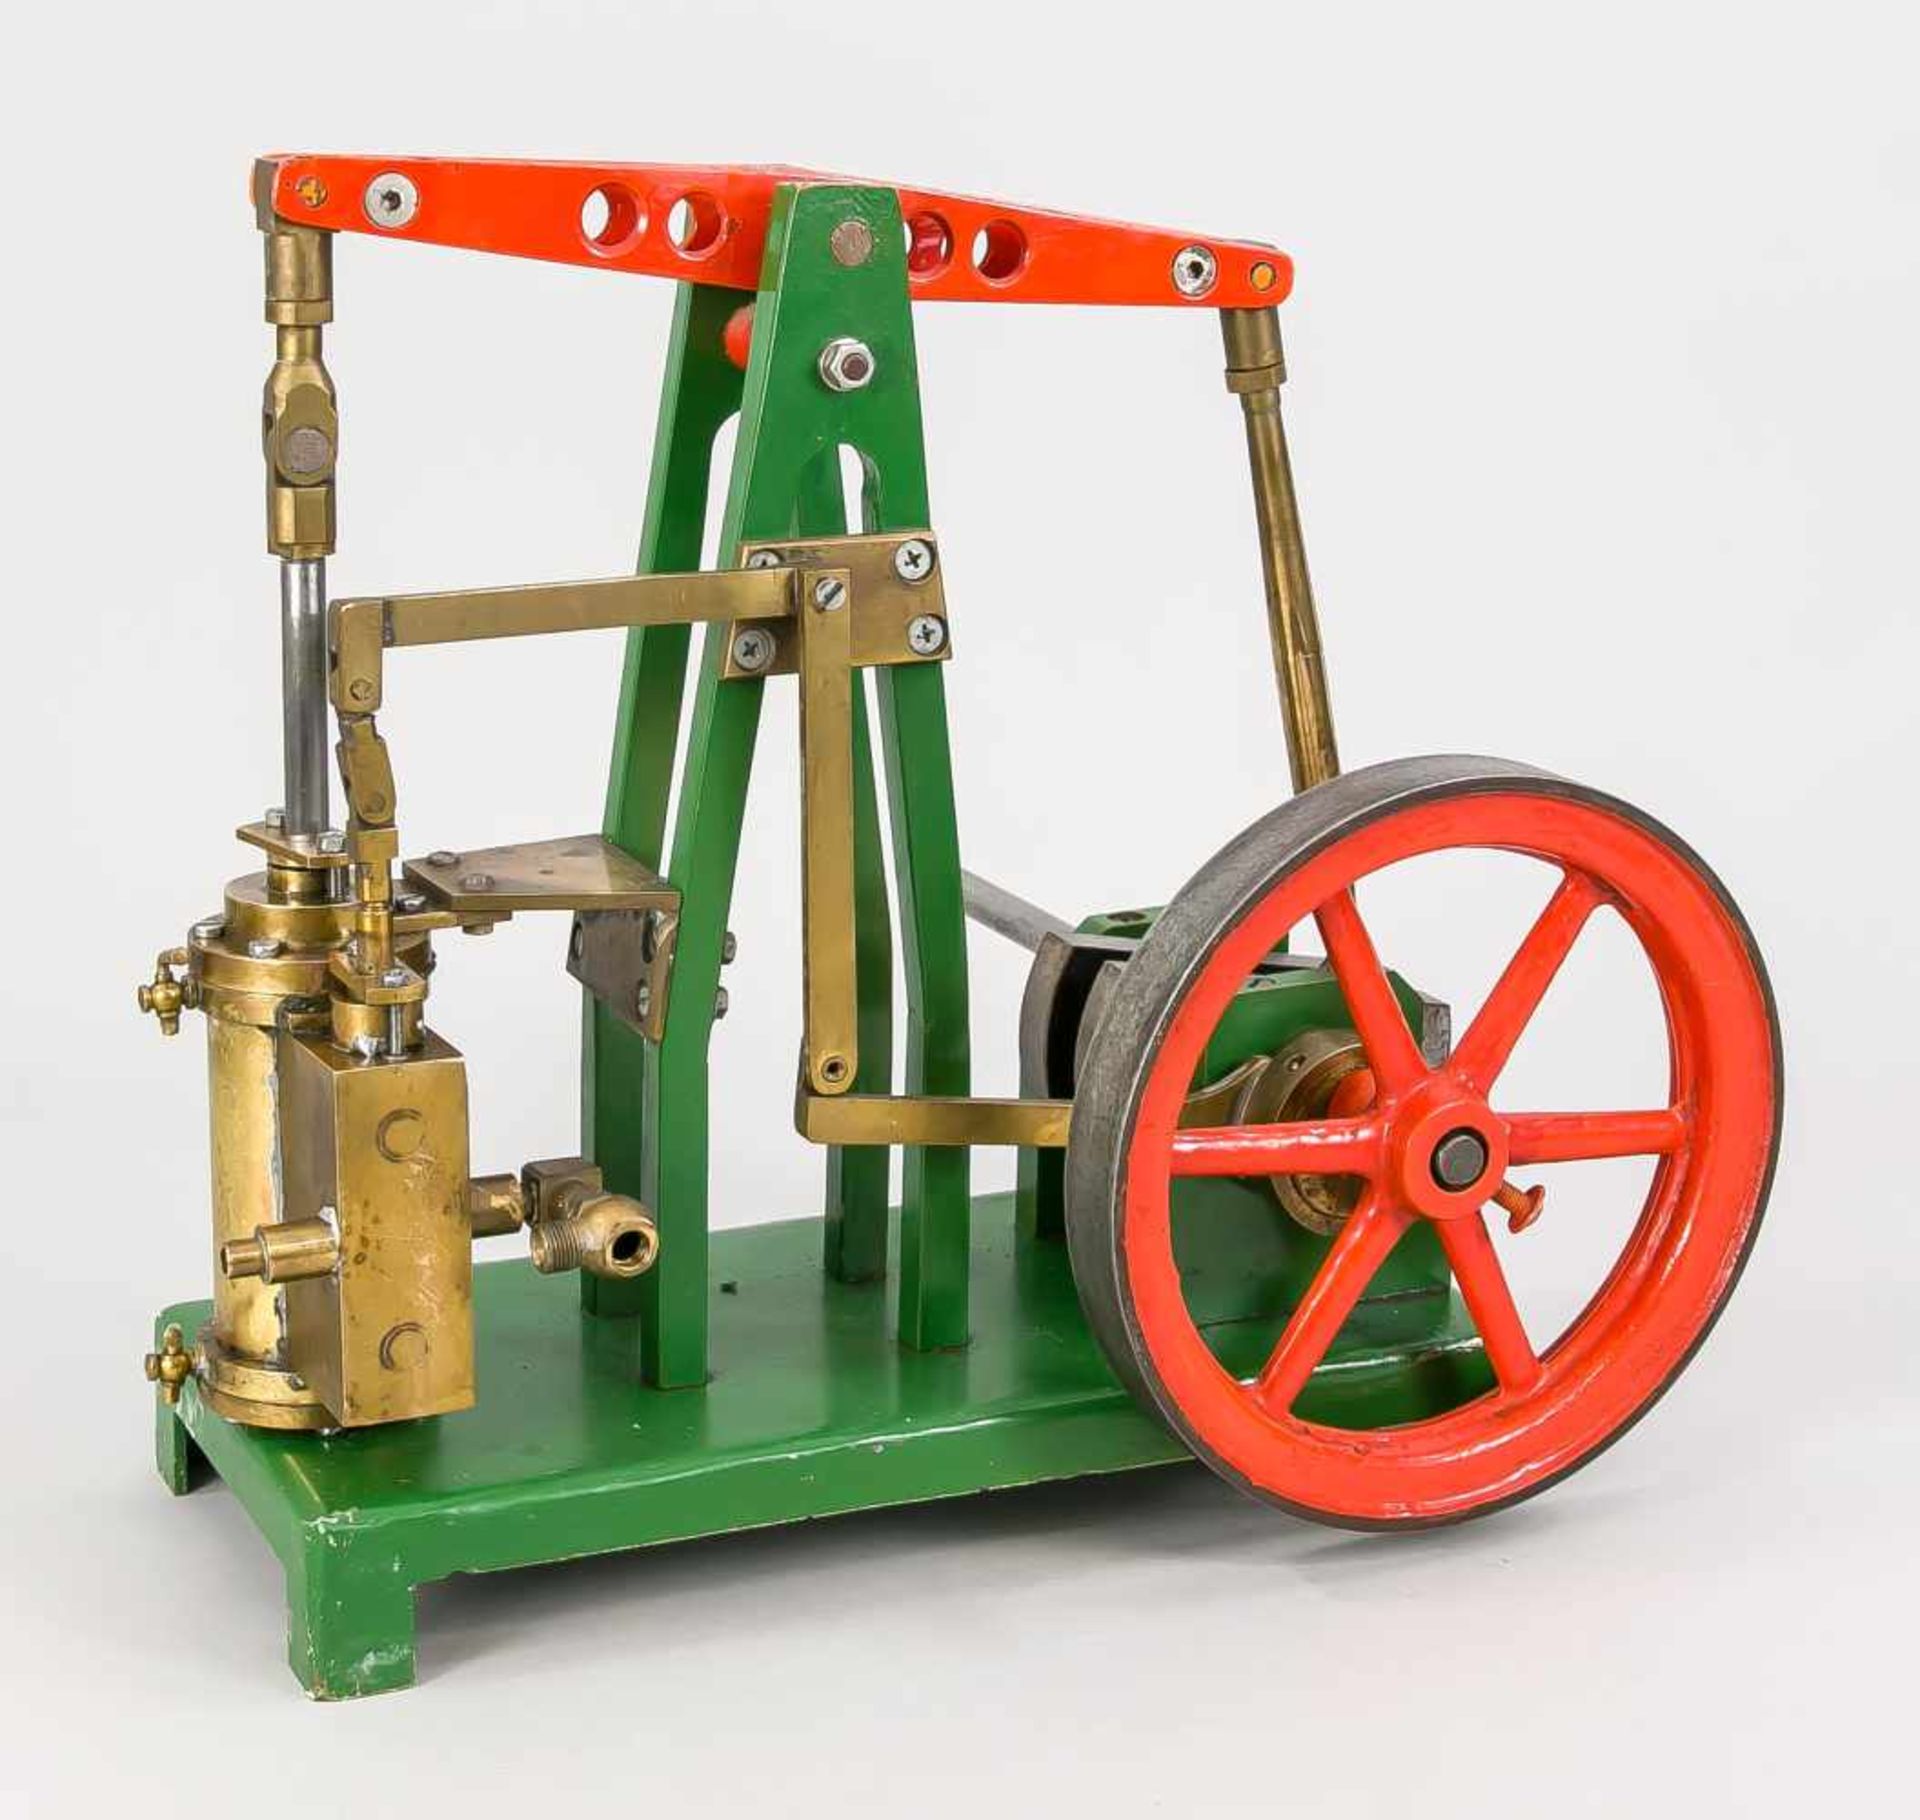 Modell einer Dampfmaschine, 1. H. 20. Jh., Eisen, Messing, Lack. Alle mechanischen Teile